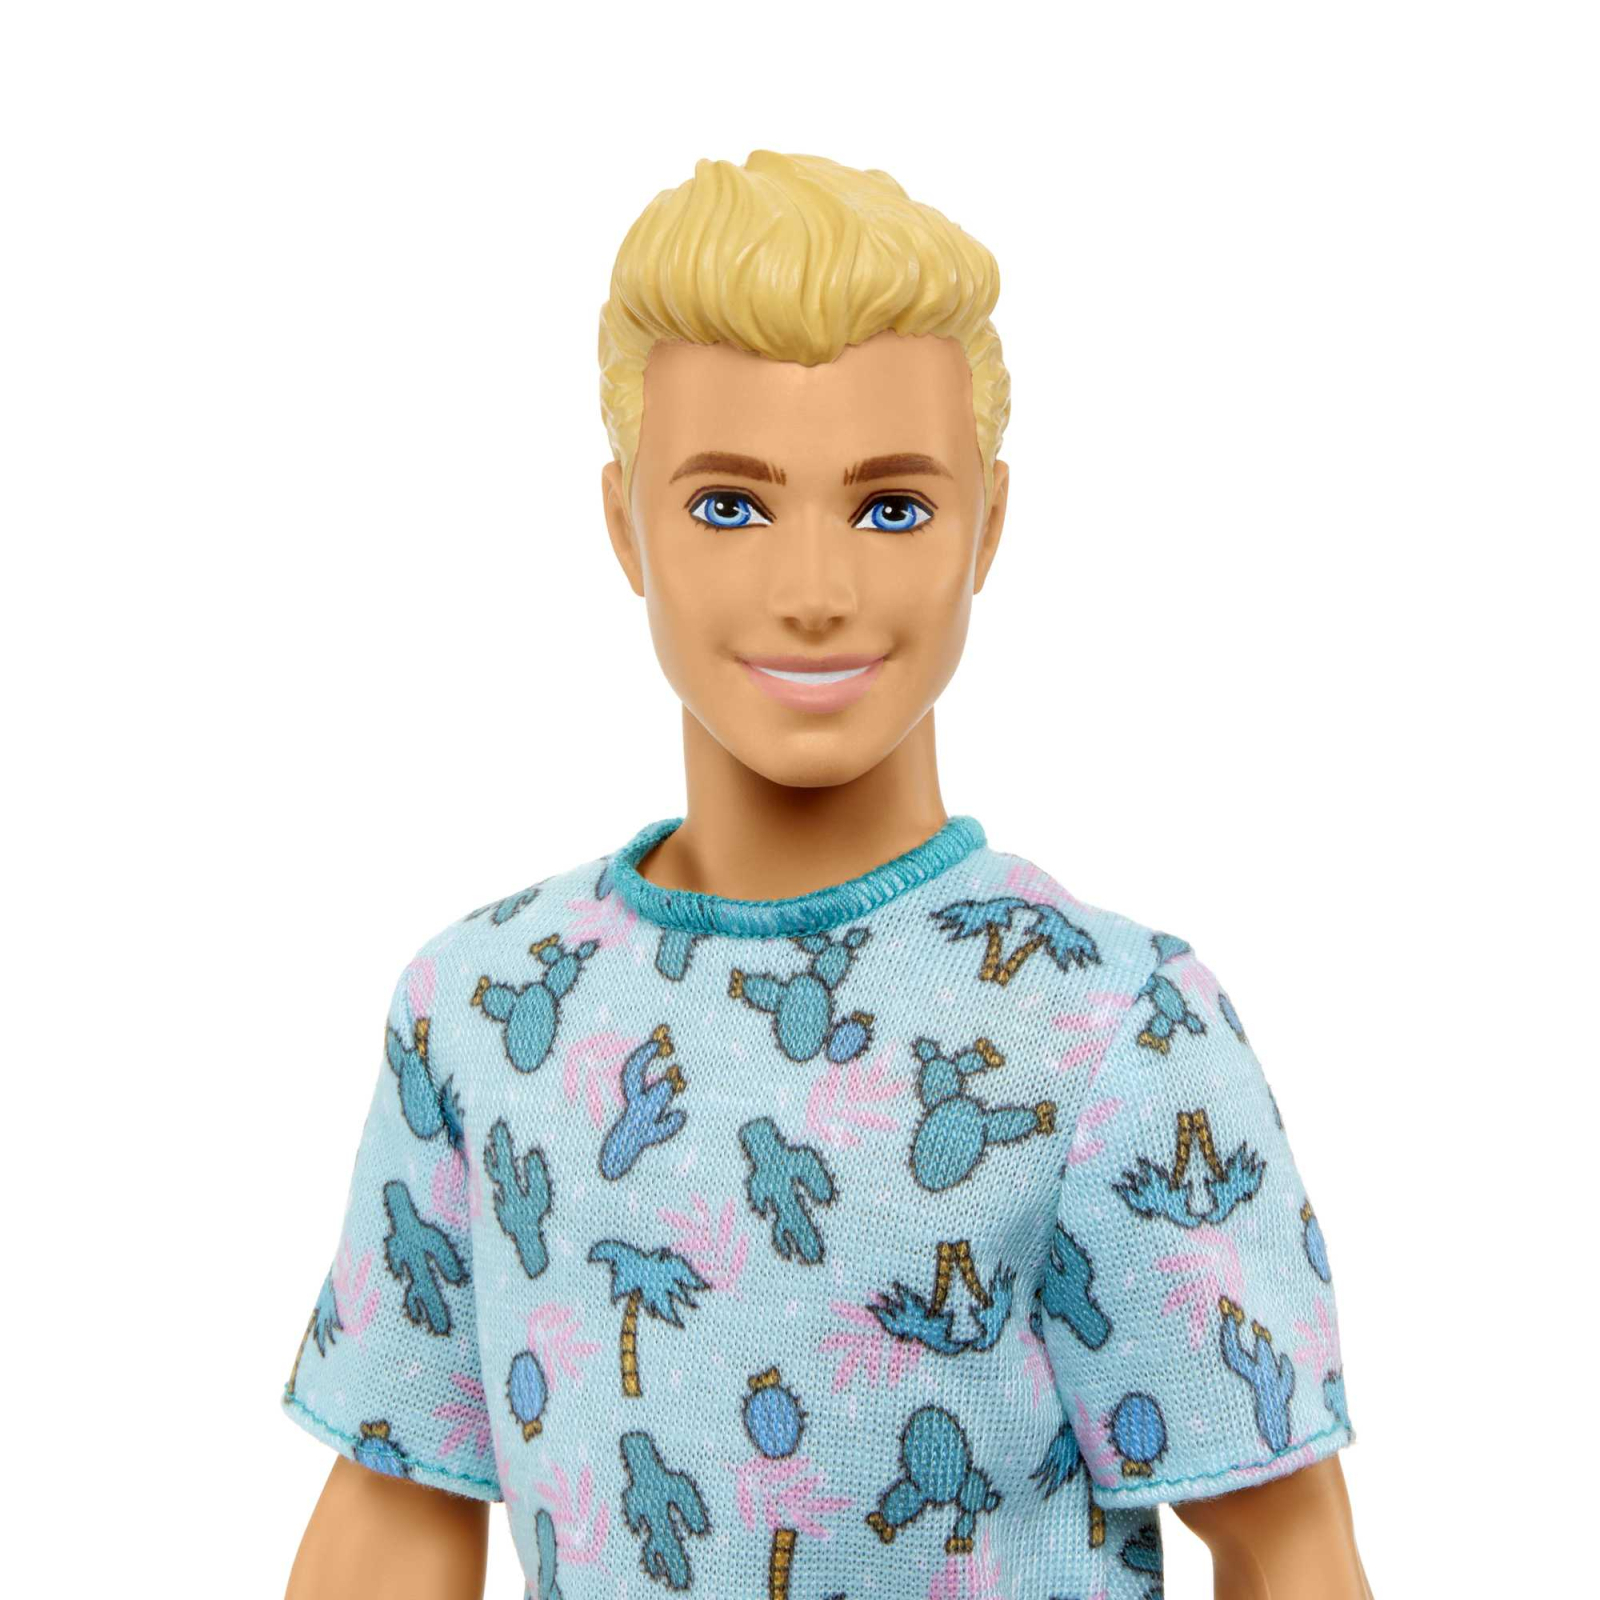 Кукла Barbie Fashionistas Кен в футболке с кактусами (HJT10) изображение 3